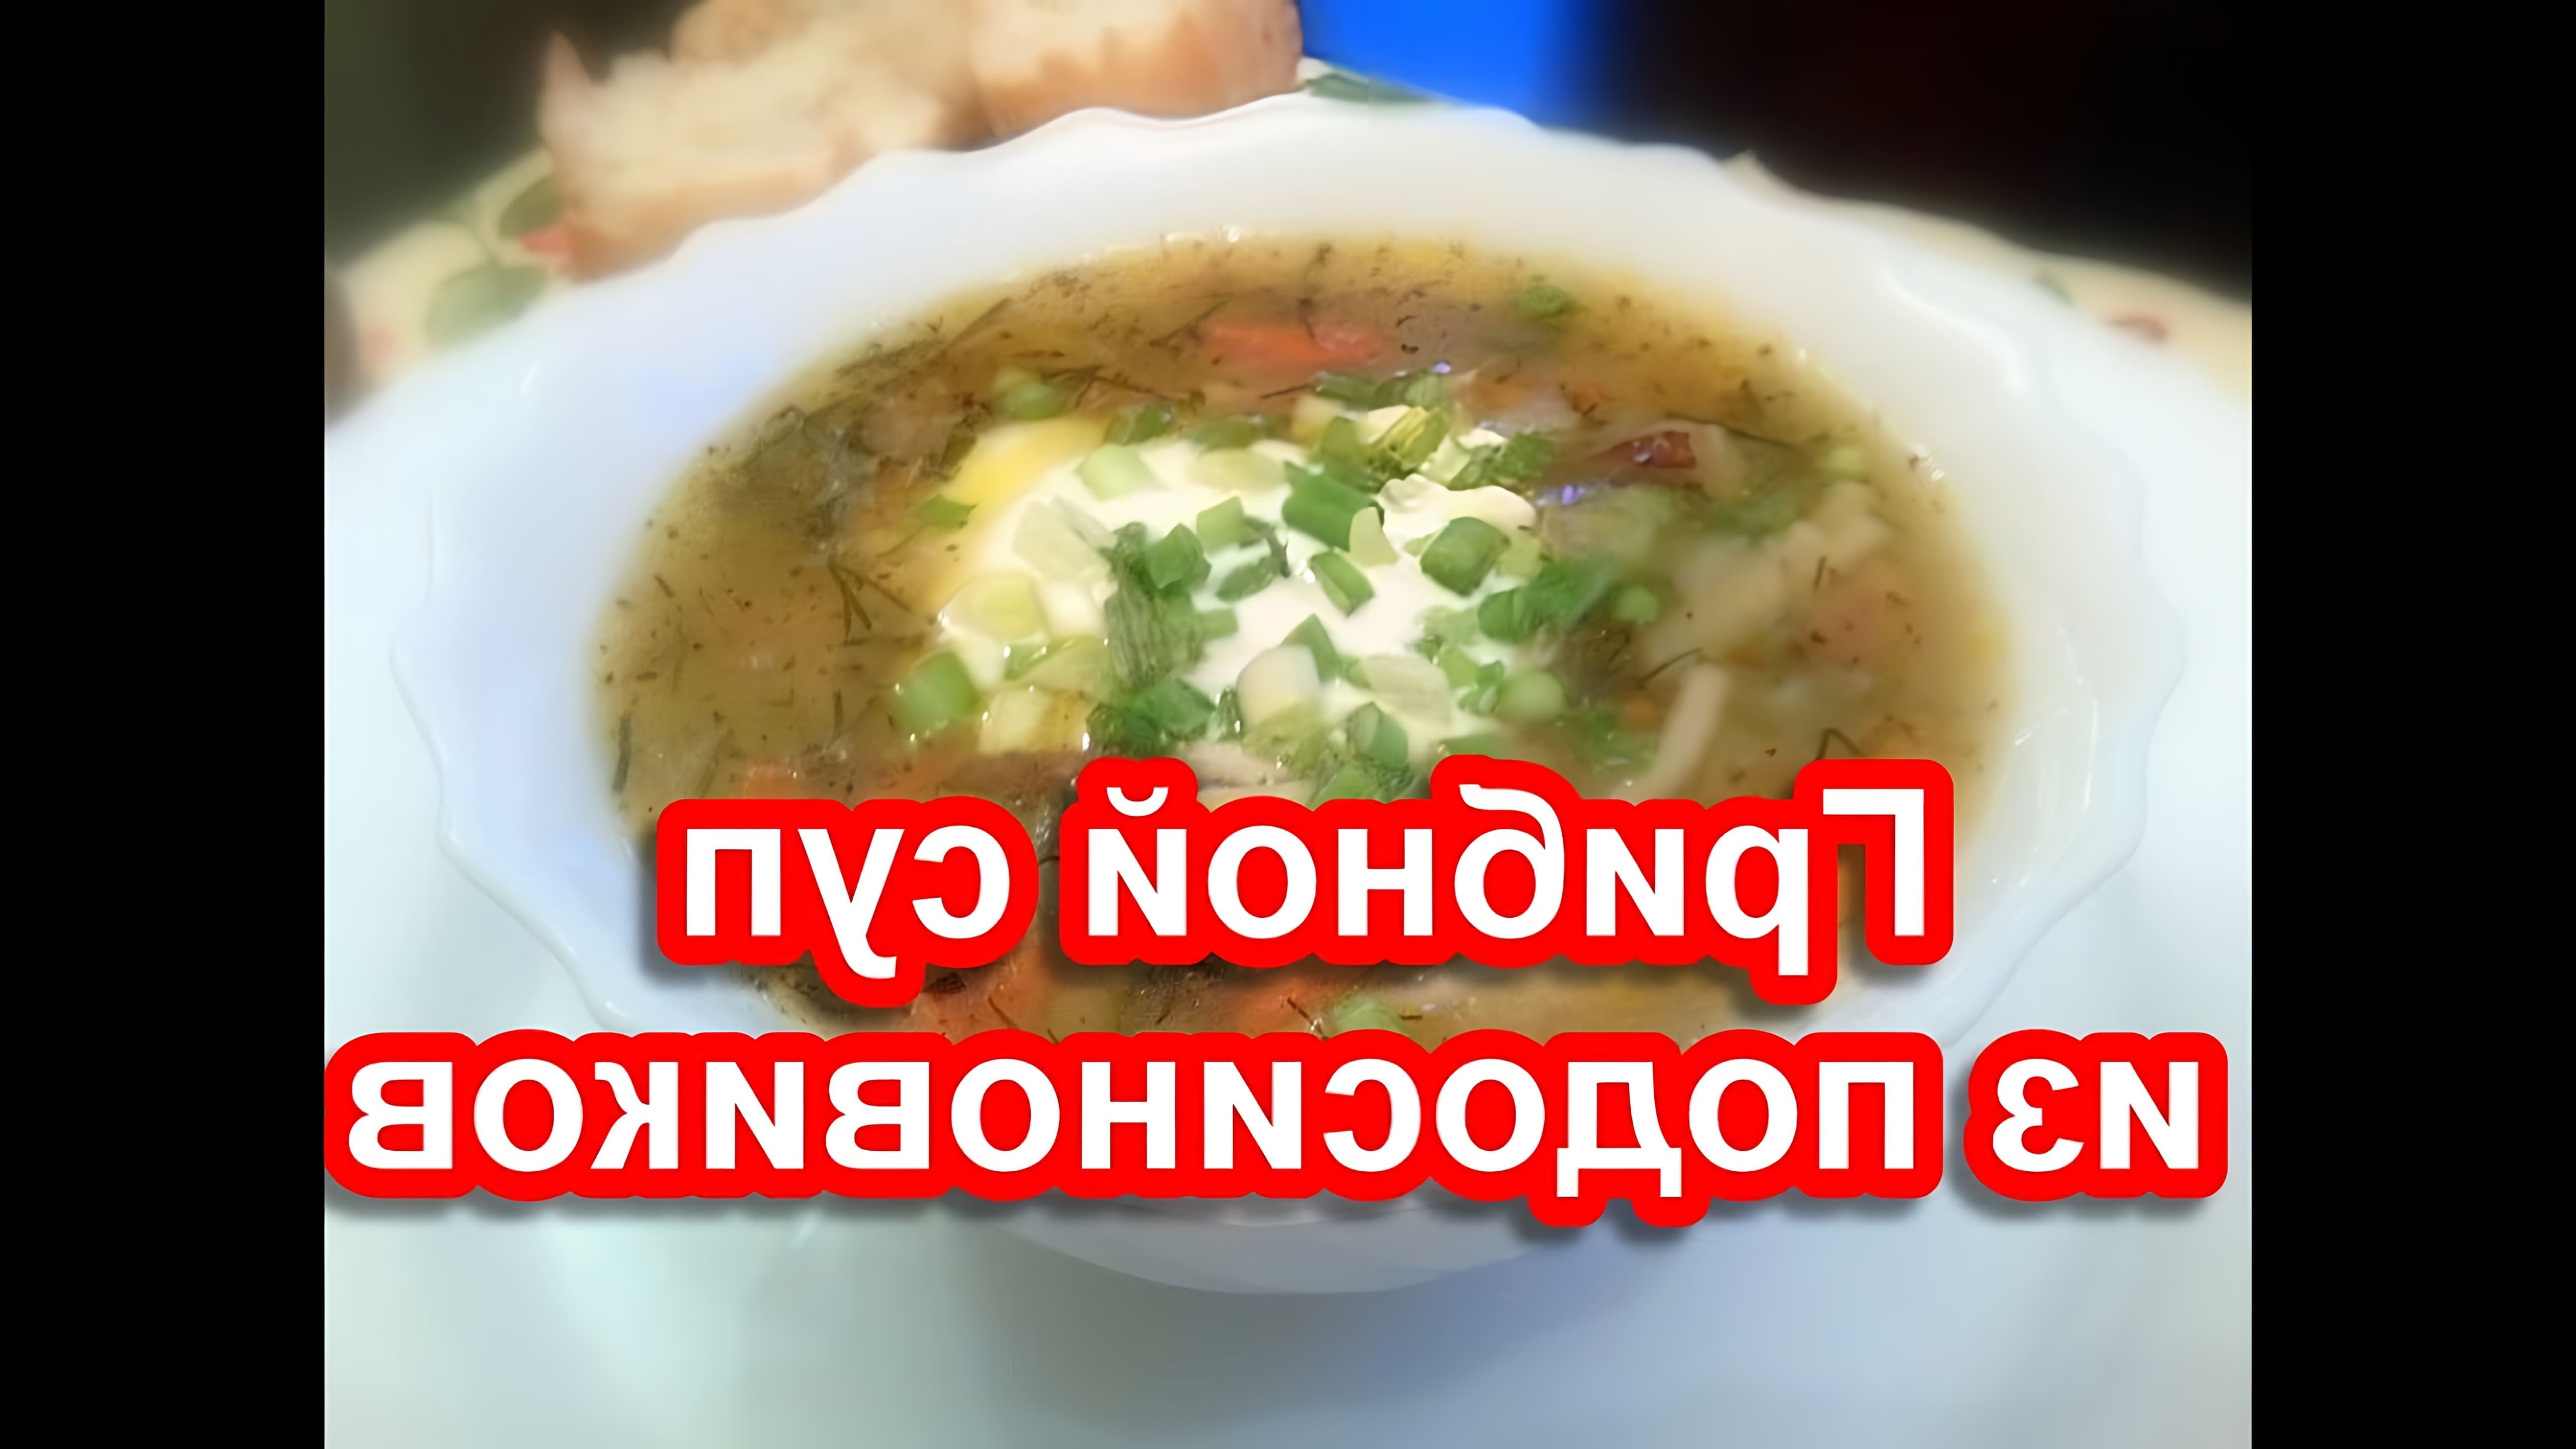 В этом видео-ролике будет показан рецепт приготовления грибного супа из подосиновиков